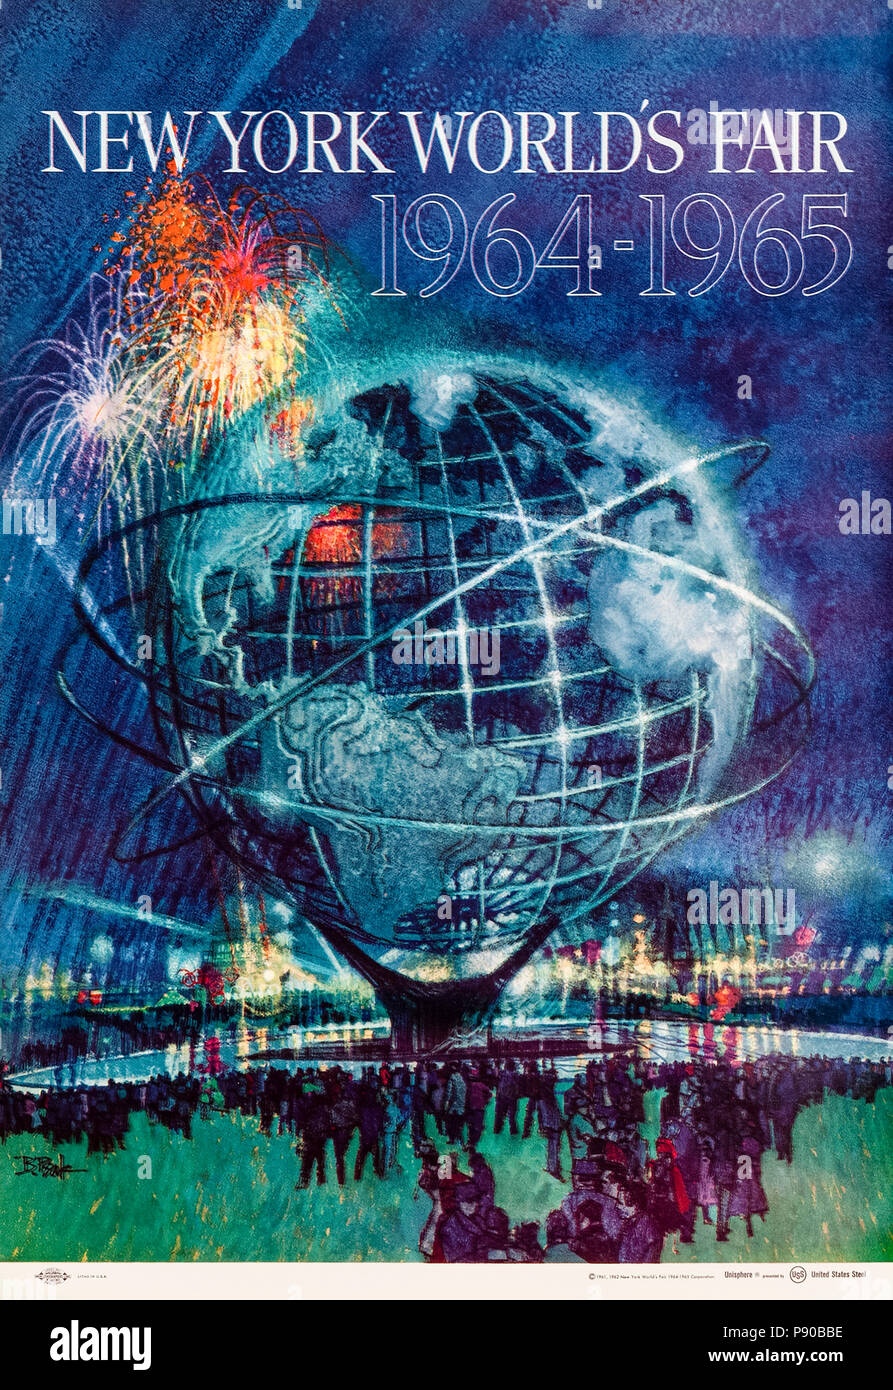 "In New York World's Fair 1964-1965 'Poster von Bob Peak (1927-1992), Feuerwerk über dem Unisphere. Weitere Informationen finden Sie unten. Stockfoto